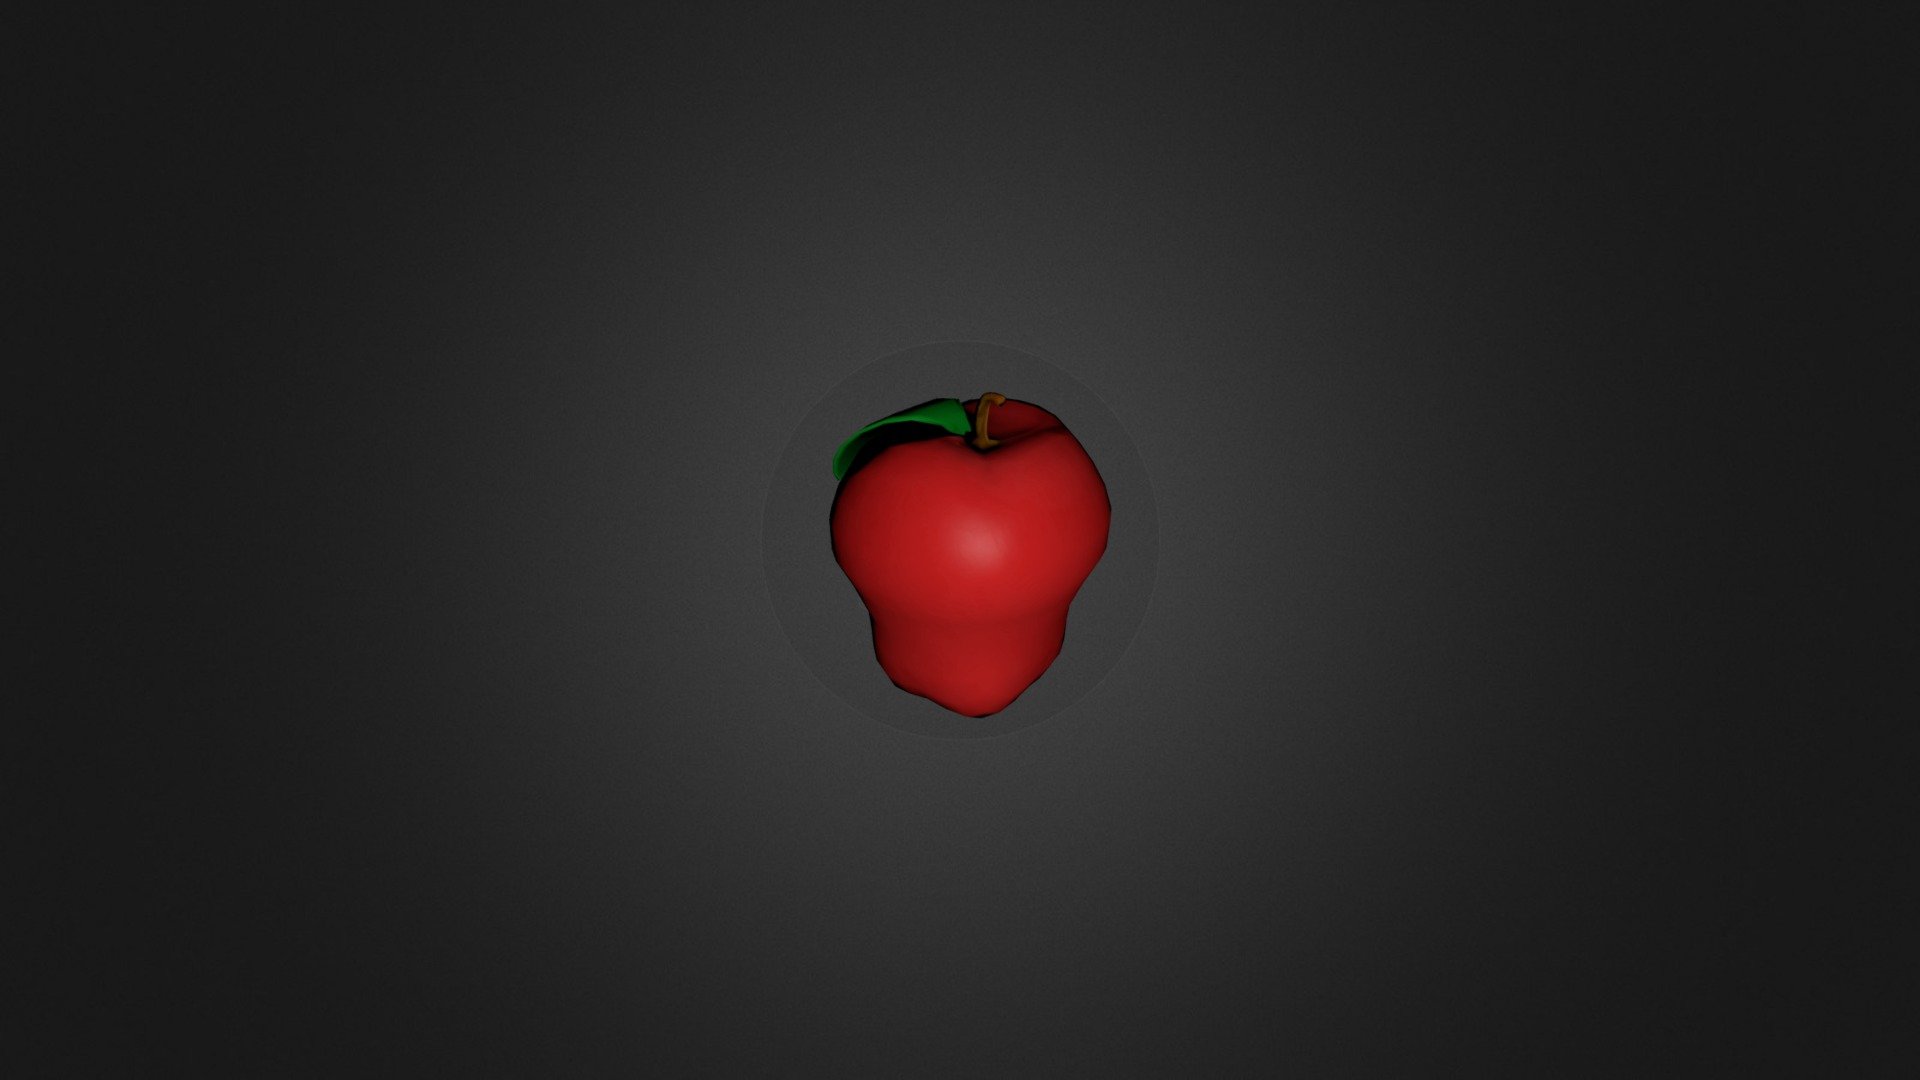 Apple - 3D model by moreragtime [bcbe6af] - Sketchfab